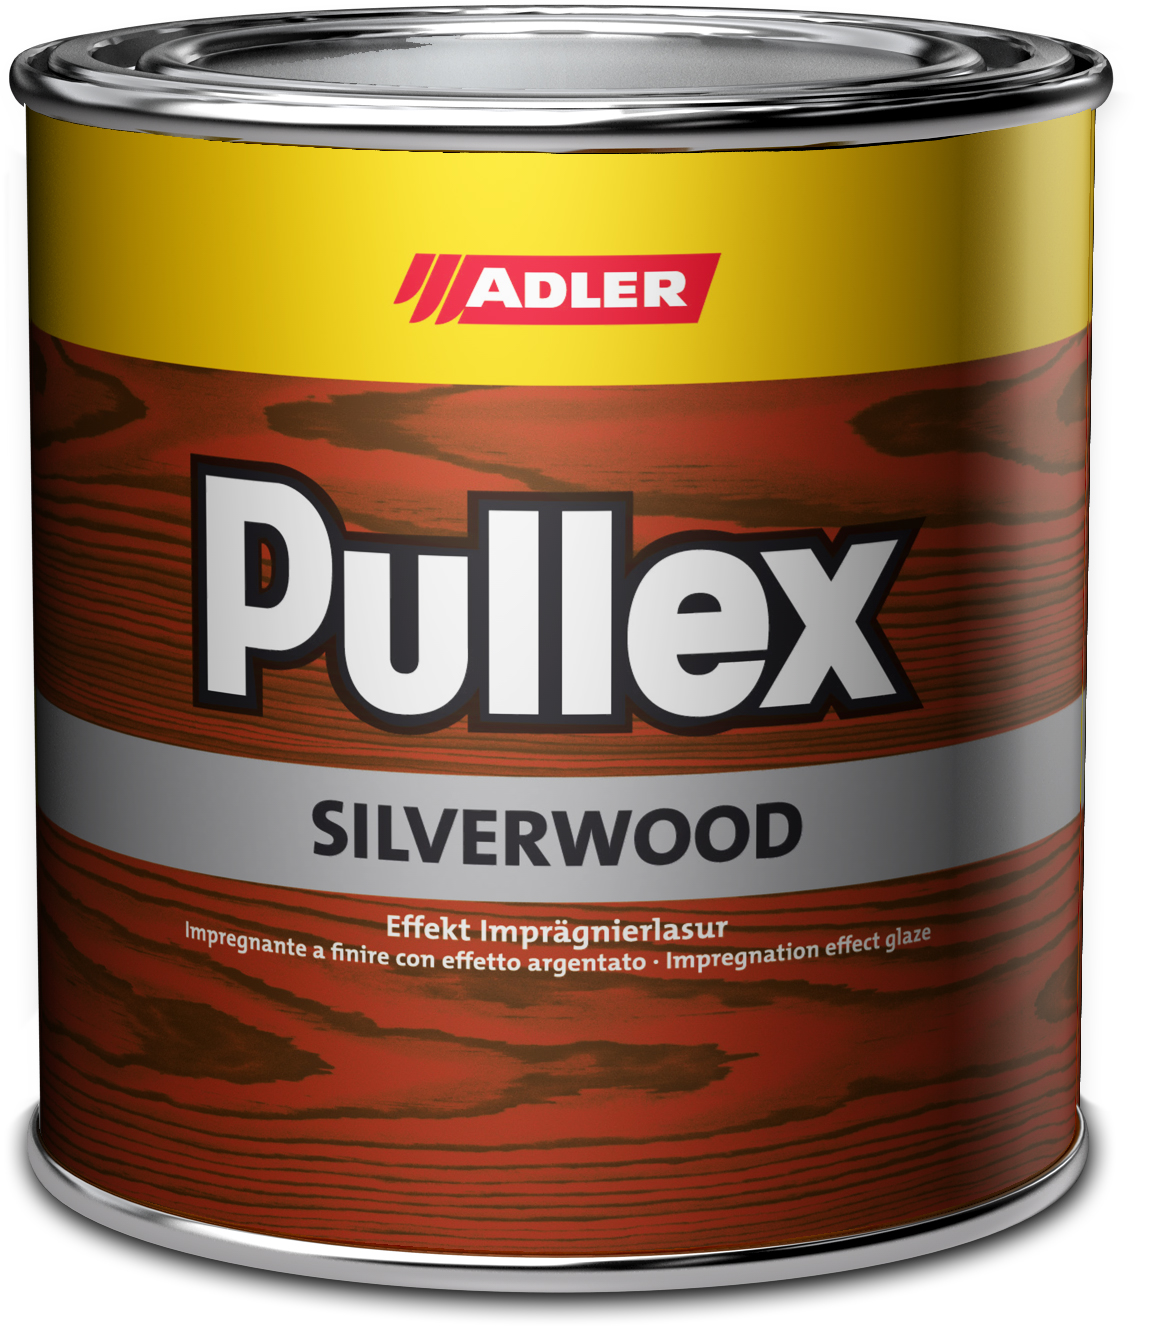 Adler Pullex Silverwood - efektná lazúra do exteriéru vytvárajúca vzhľad starého dreva 750 ml silber - strieborná